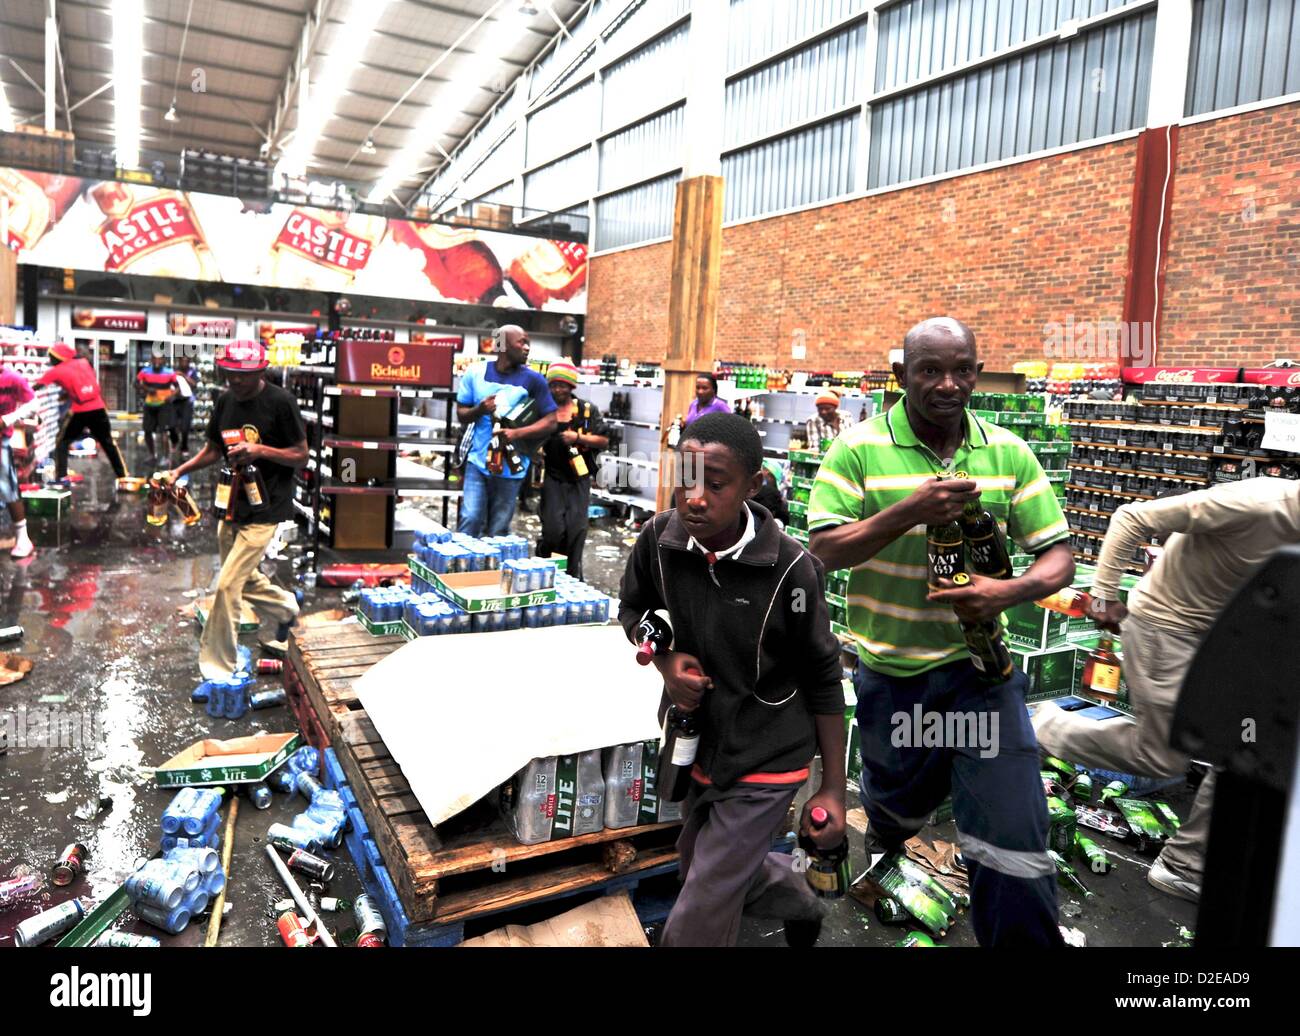 SASOLBURG, SUD AFRICA: contestatori saccheggiare un negozio di liquori a gennaio 21, 2013, in Sasolburg, Sud Africa. Protesta scoppiata a seguito dell'annuncio dell'intenzione di integrare i sistemi urbani da Sasol a Parys. (Foto di Gallo Immagini / Foto24 / Lucky Maibi) Foto Stock